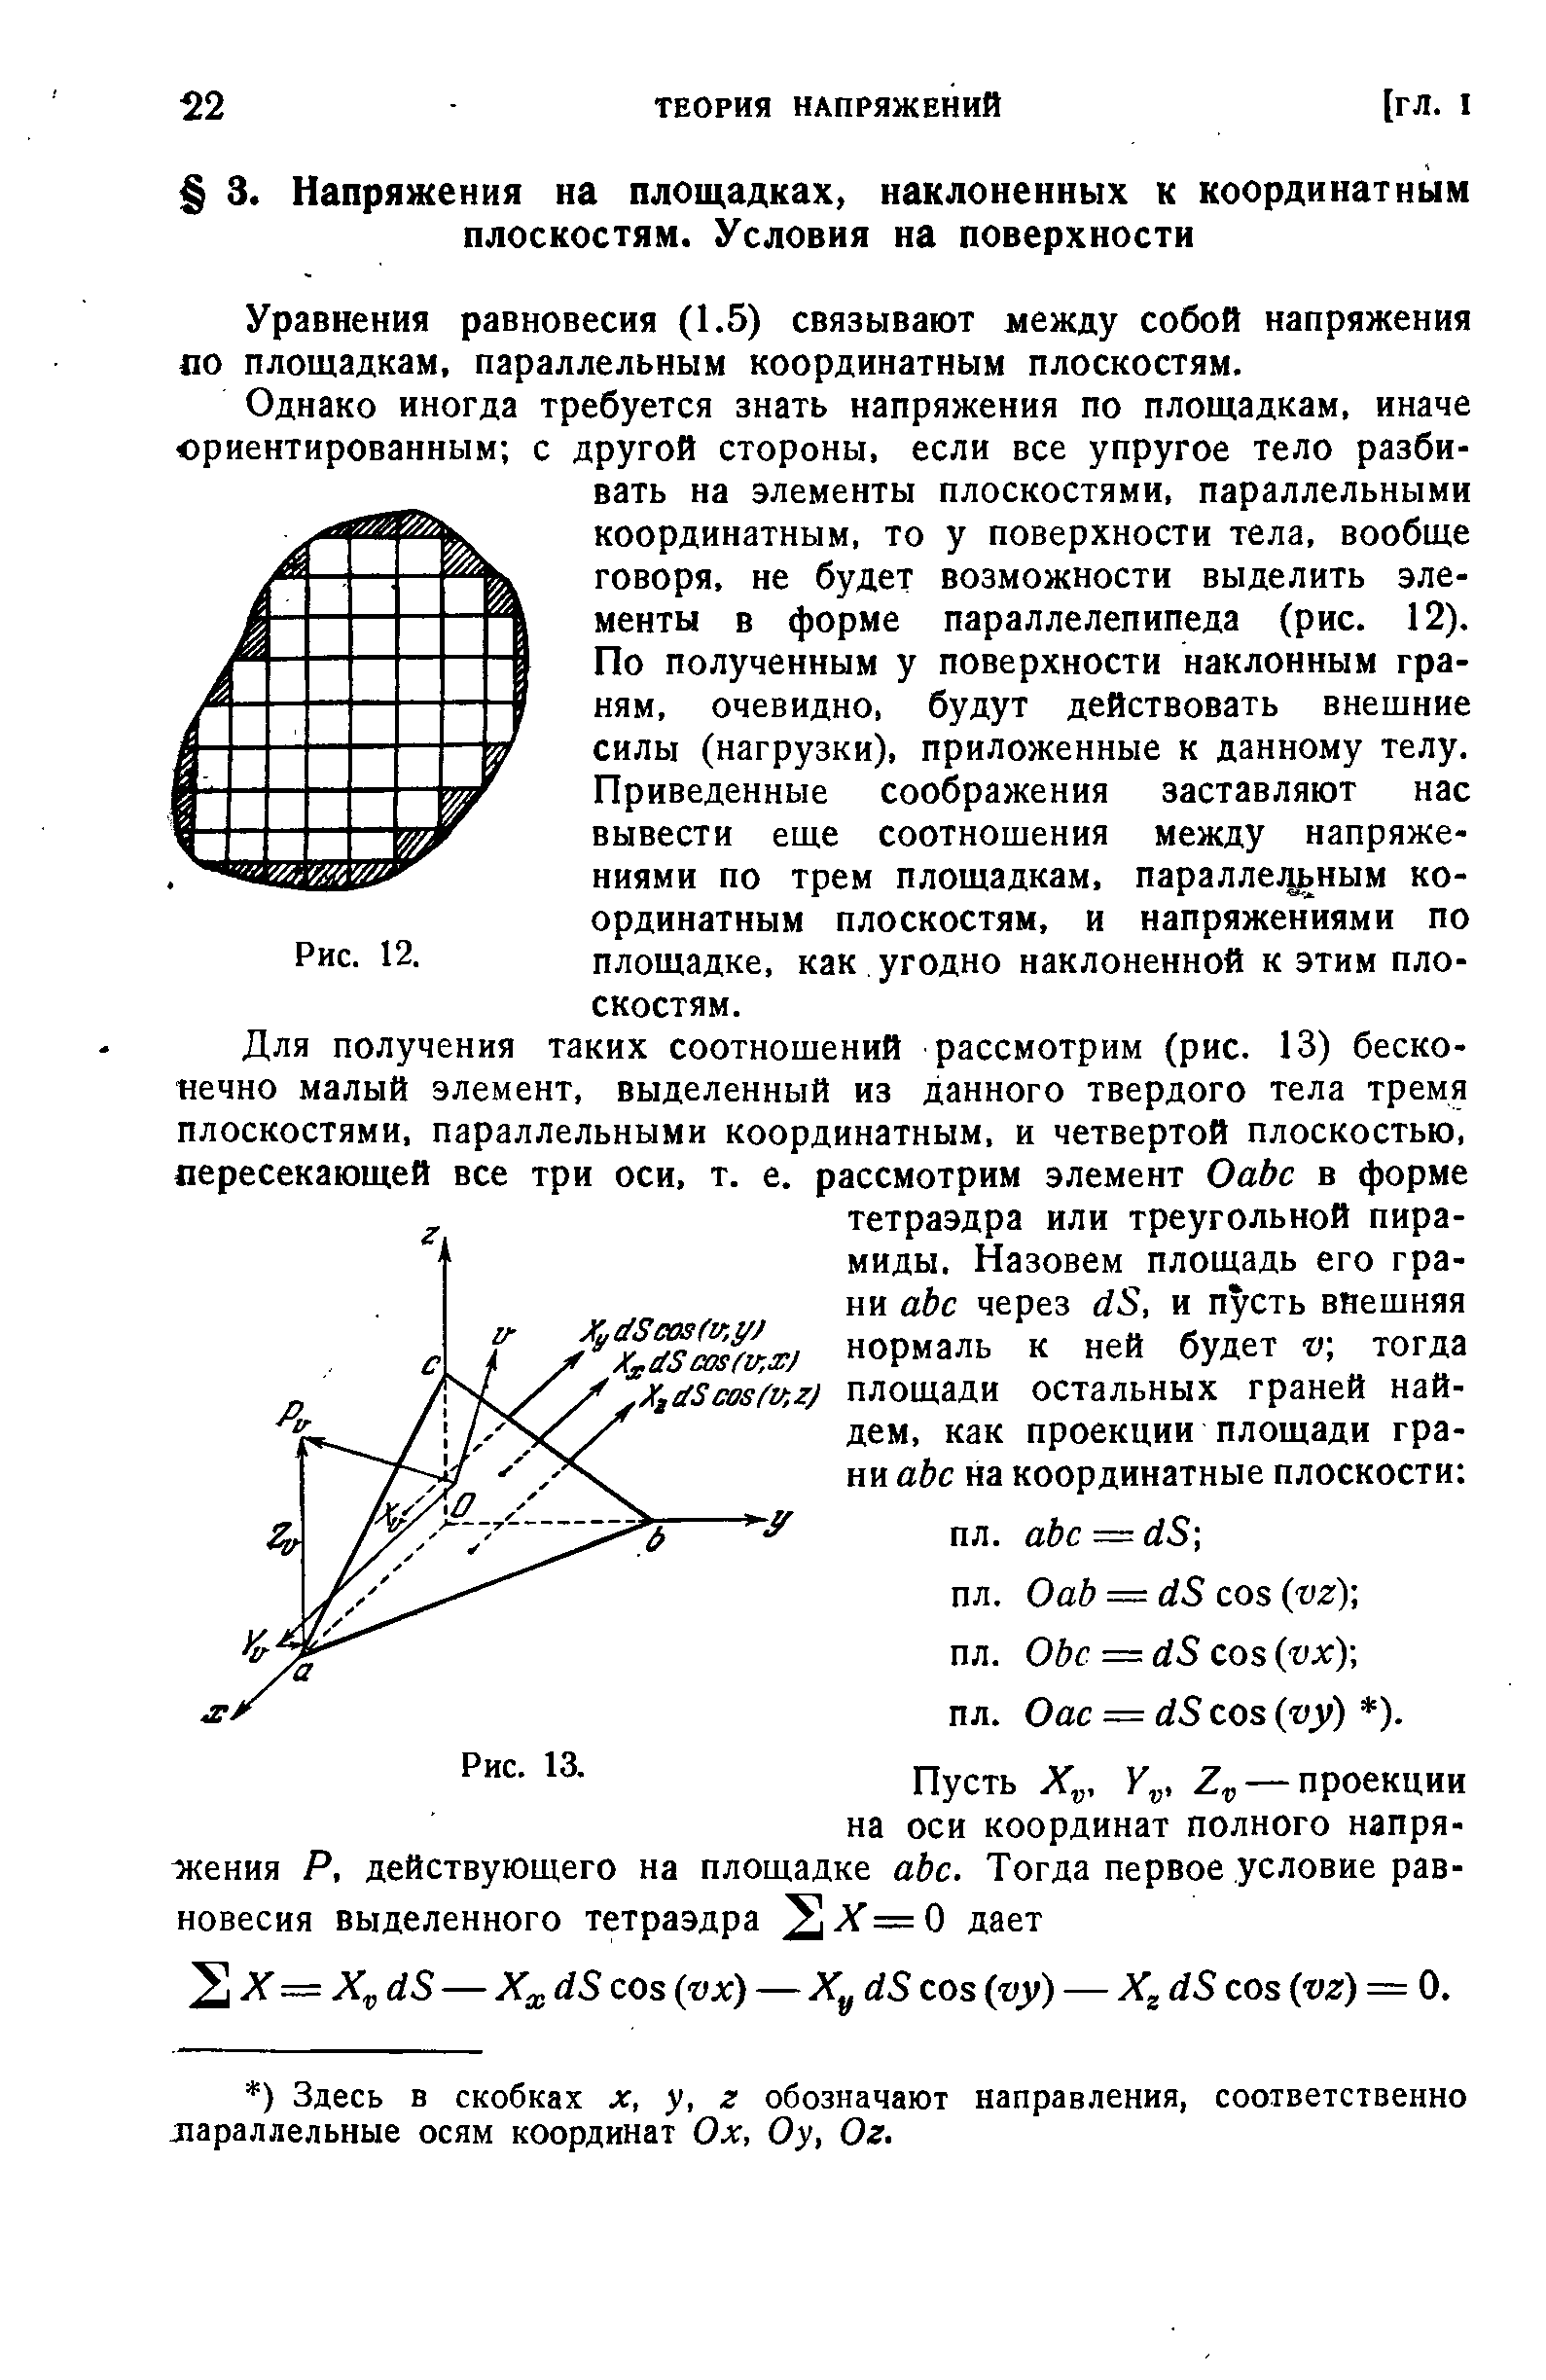 Уравнения равновесия (1.5) связывают между собой напряжения по площадкам, параллельным координатным плоскостям.
